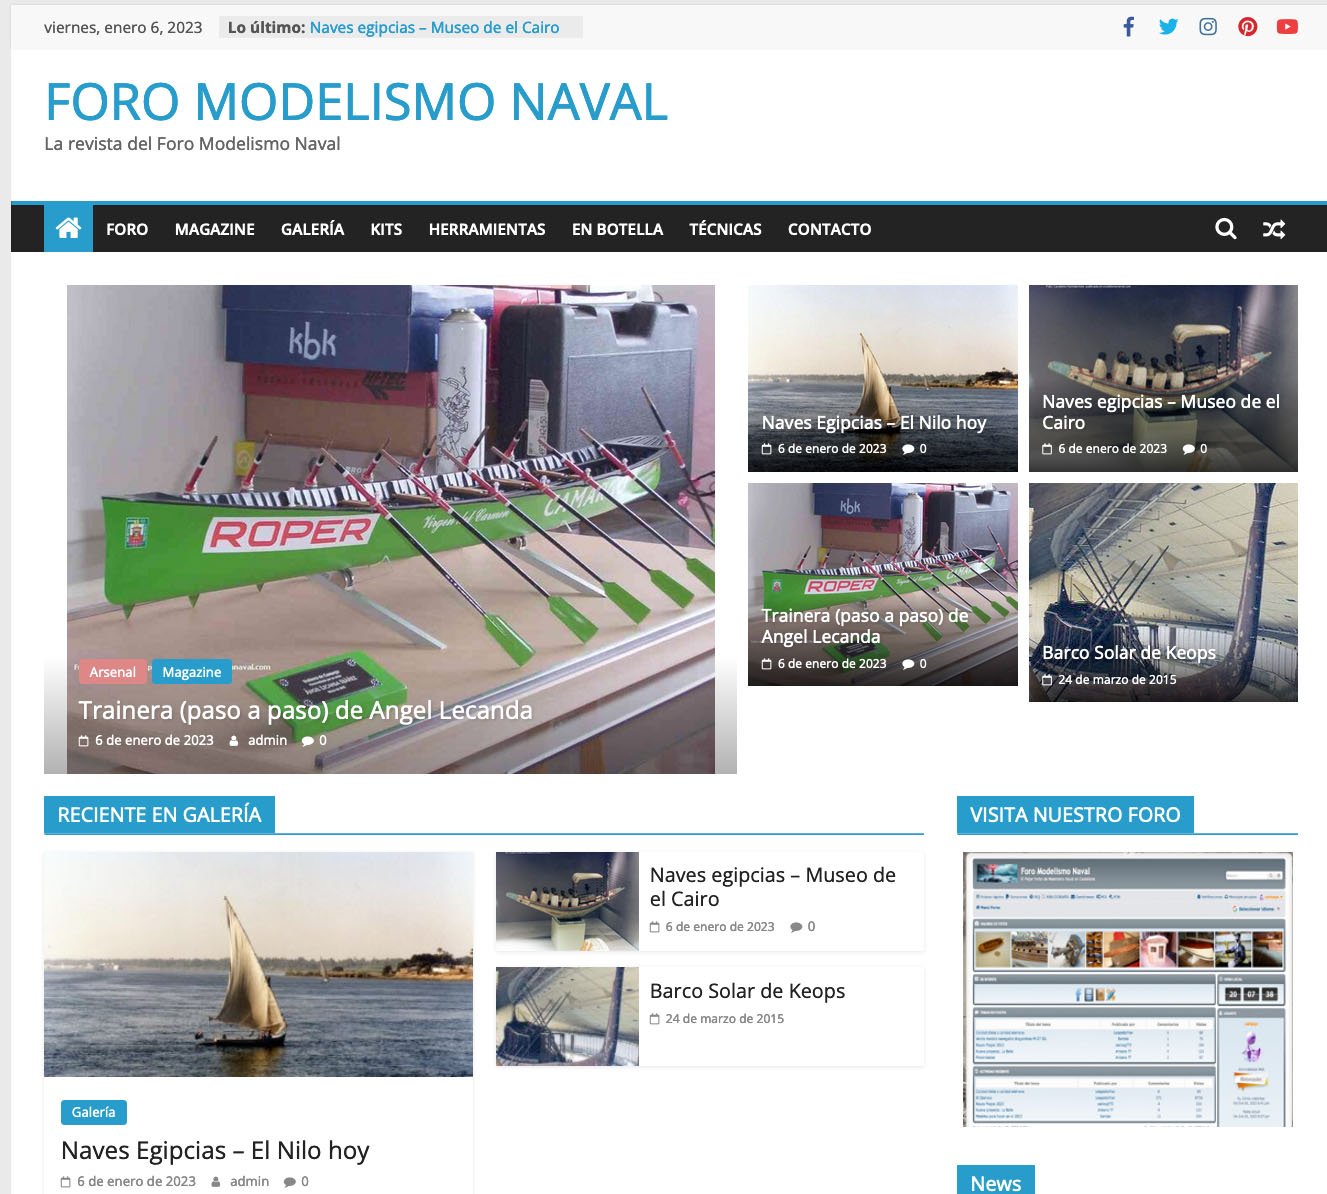 Screenshot 2023-01-06 at 20-27-31 FORO MODELISMO NAVAL – La revista del Foro Modelismo Naval.jpg